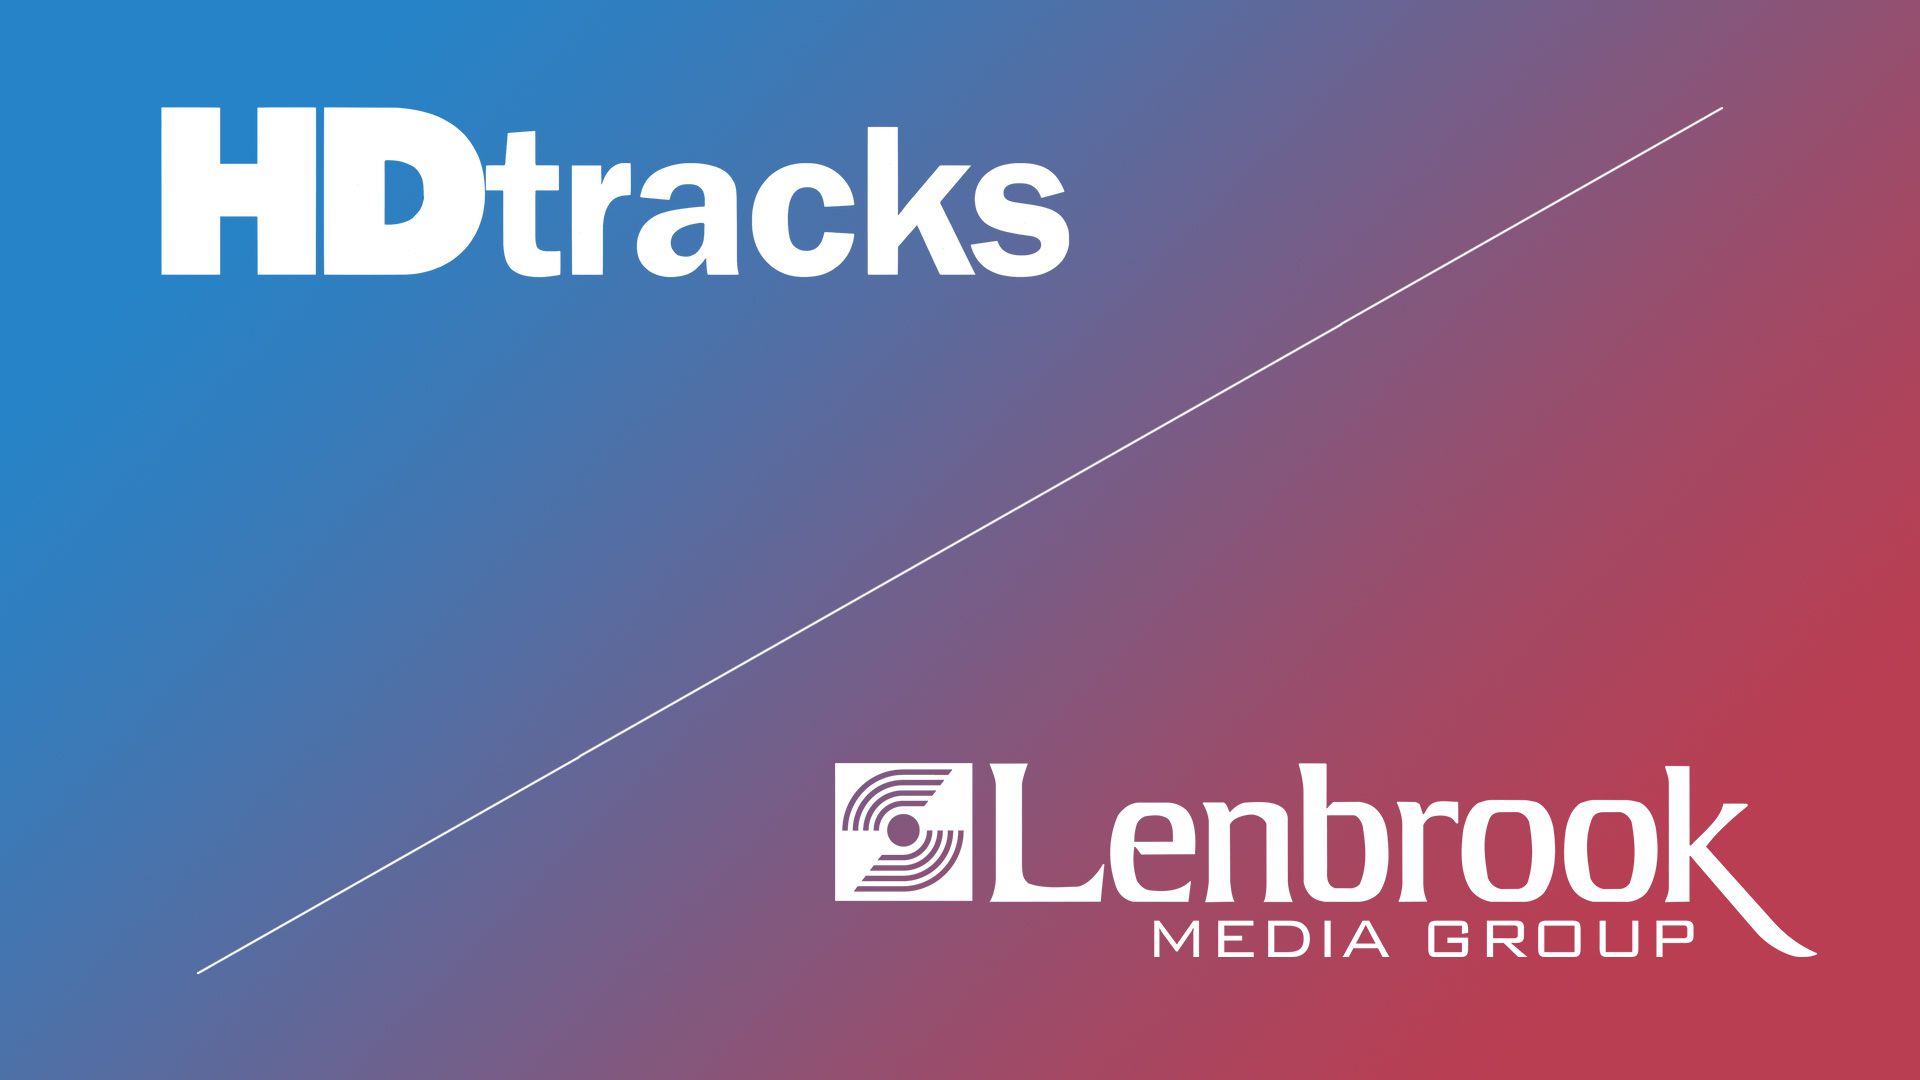 Logotipo de Lenbrook y HDtracks sobre un fondo degradado.